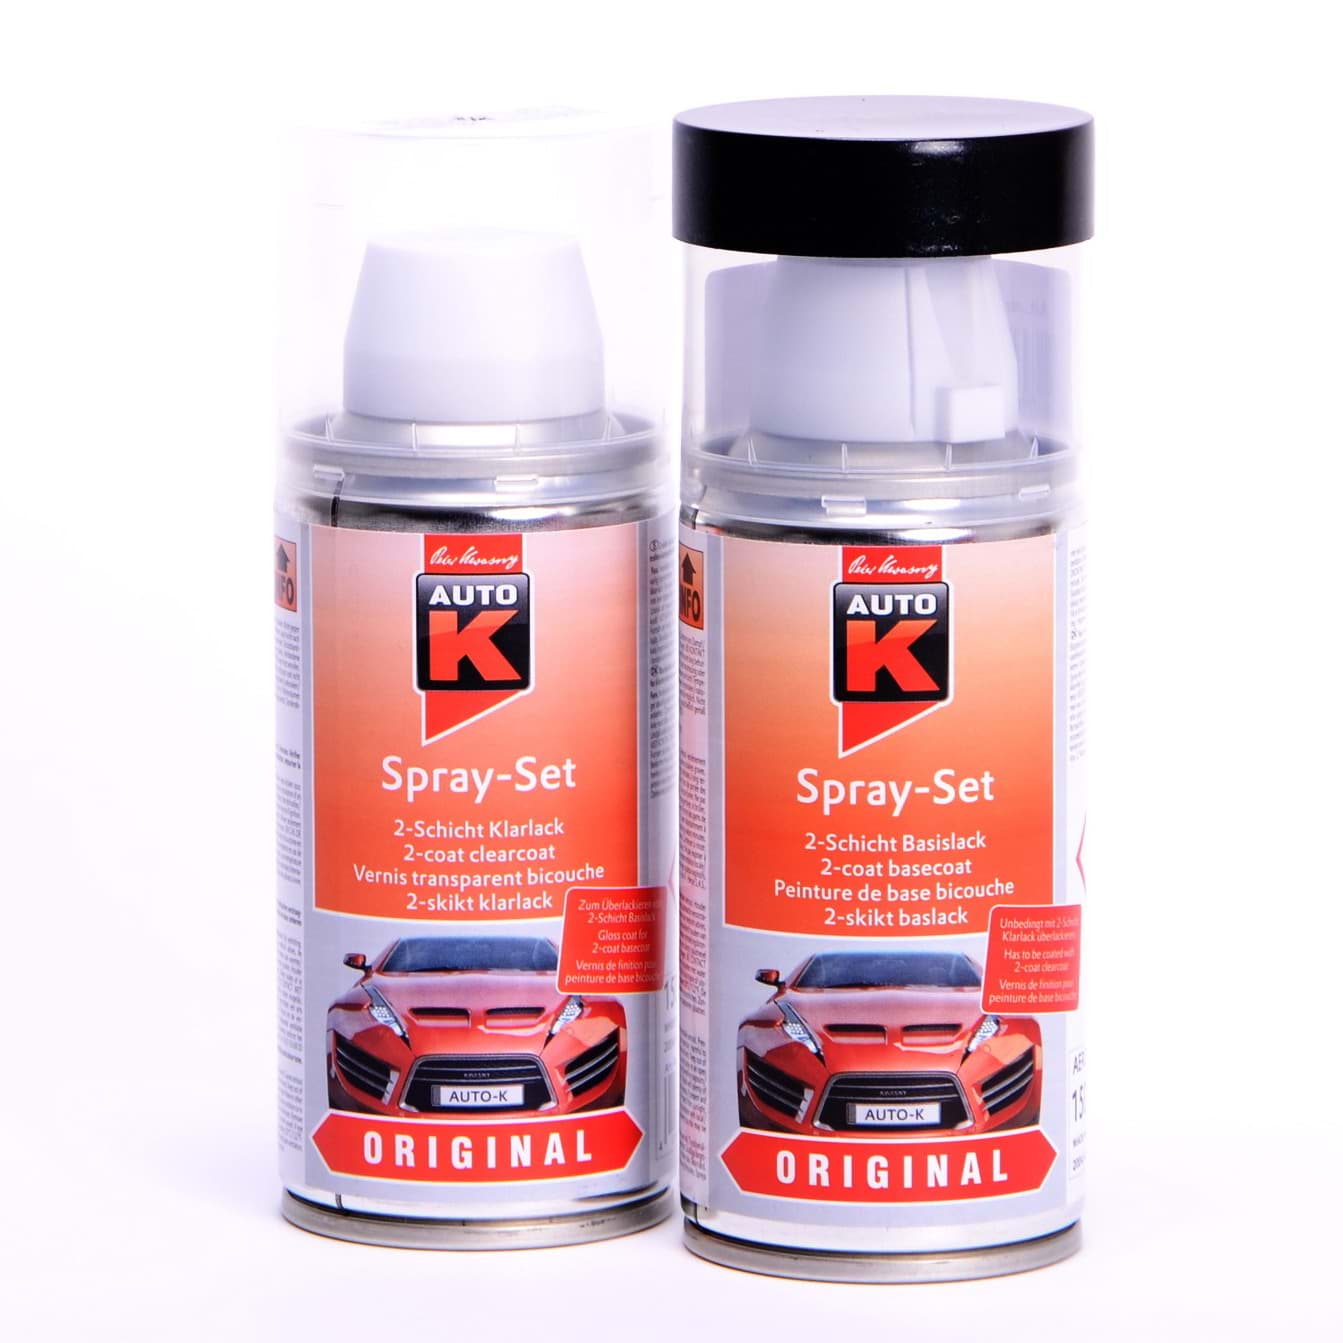 Afbeelding van Auto-K Spray-Set Autolack für Volkswagen, VW, Audi LY9G Casablancaweiss 20771